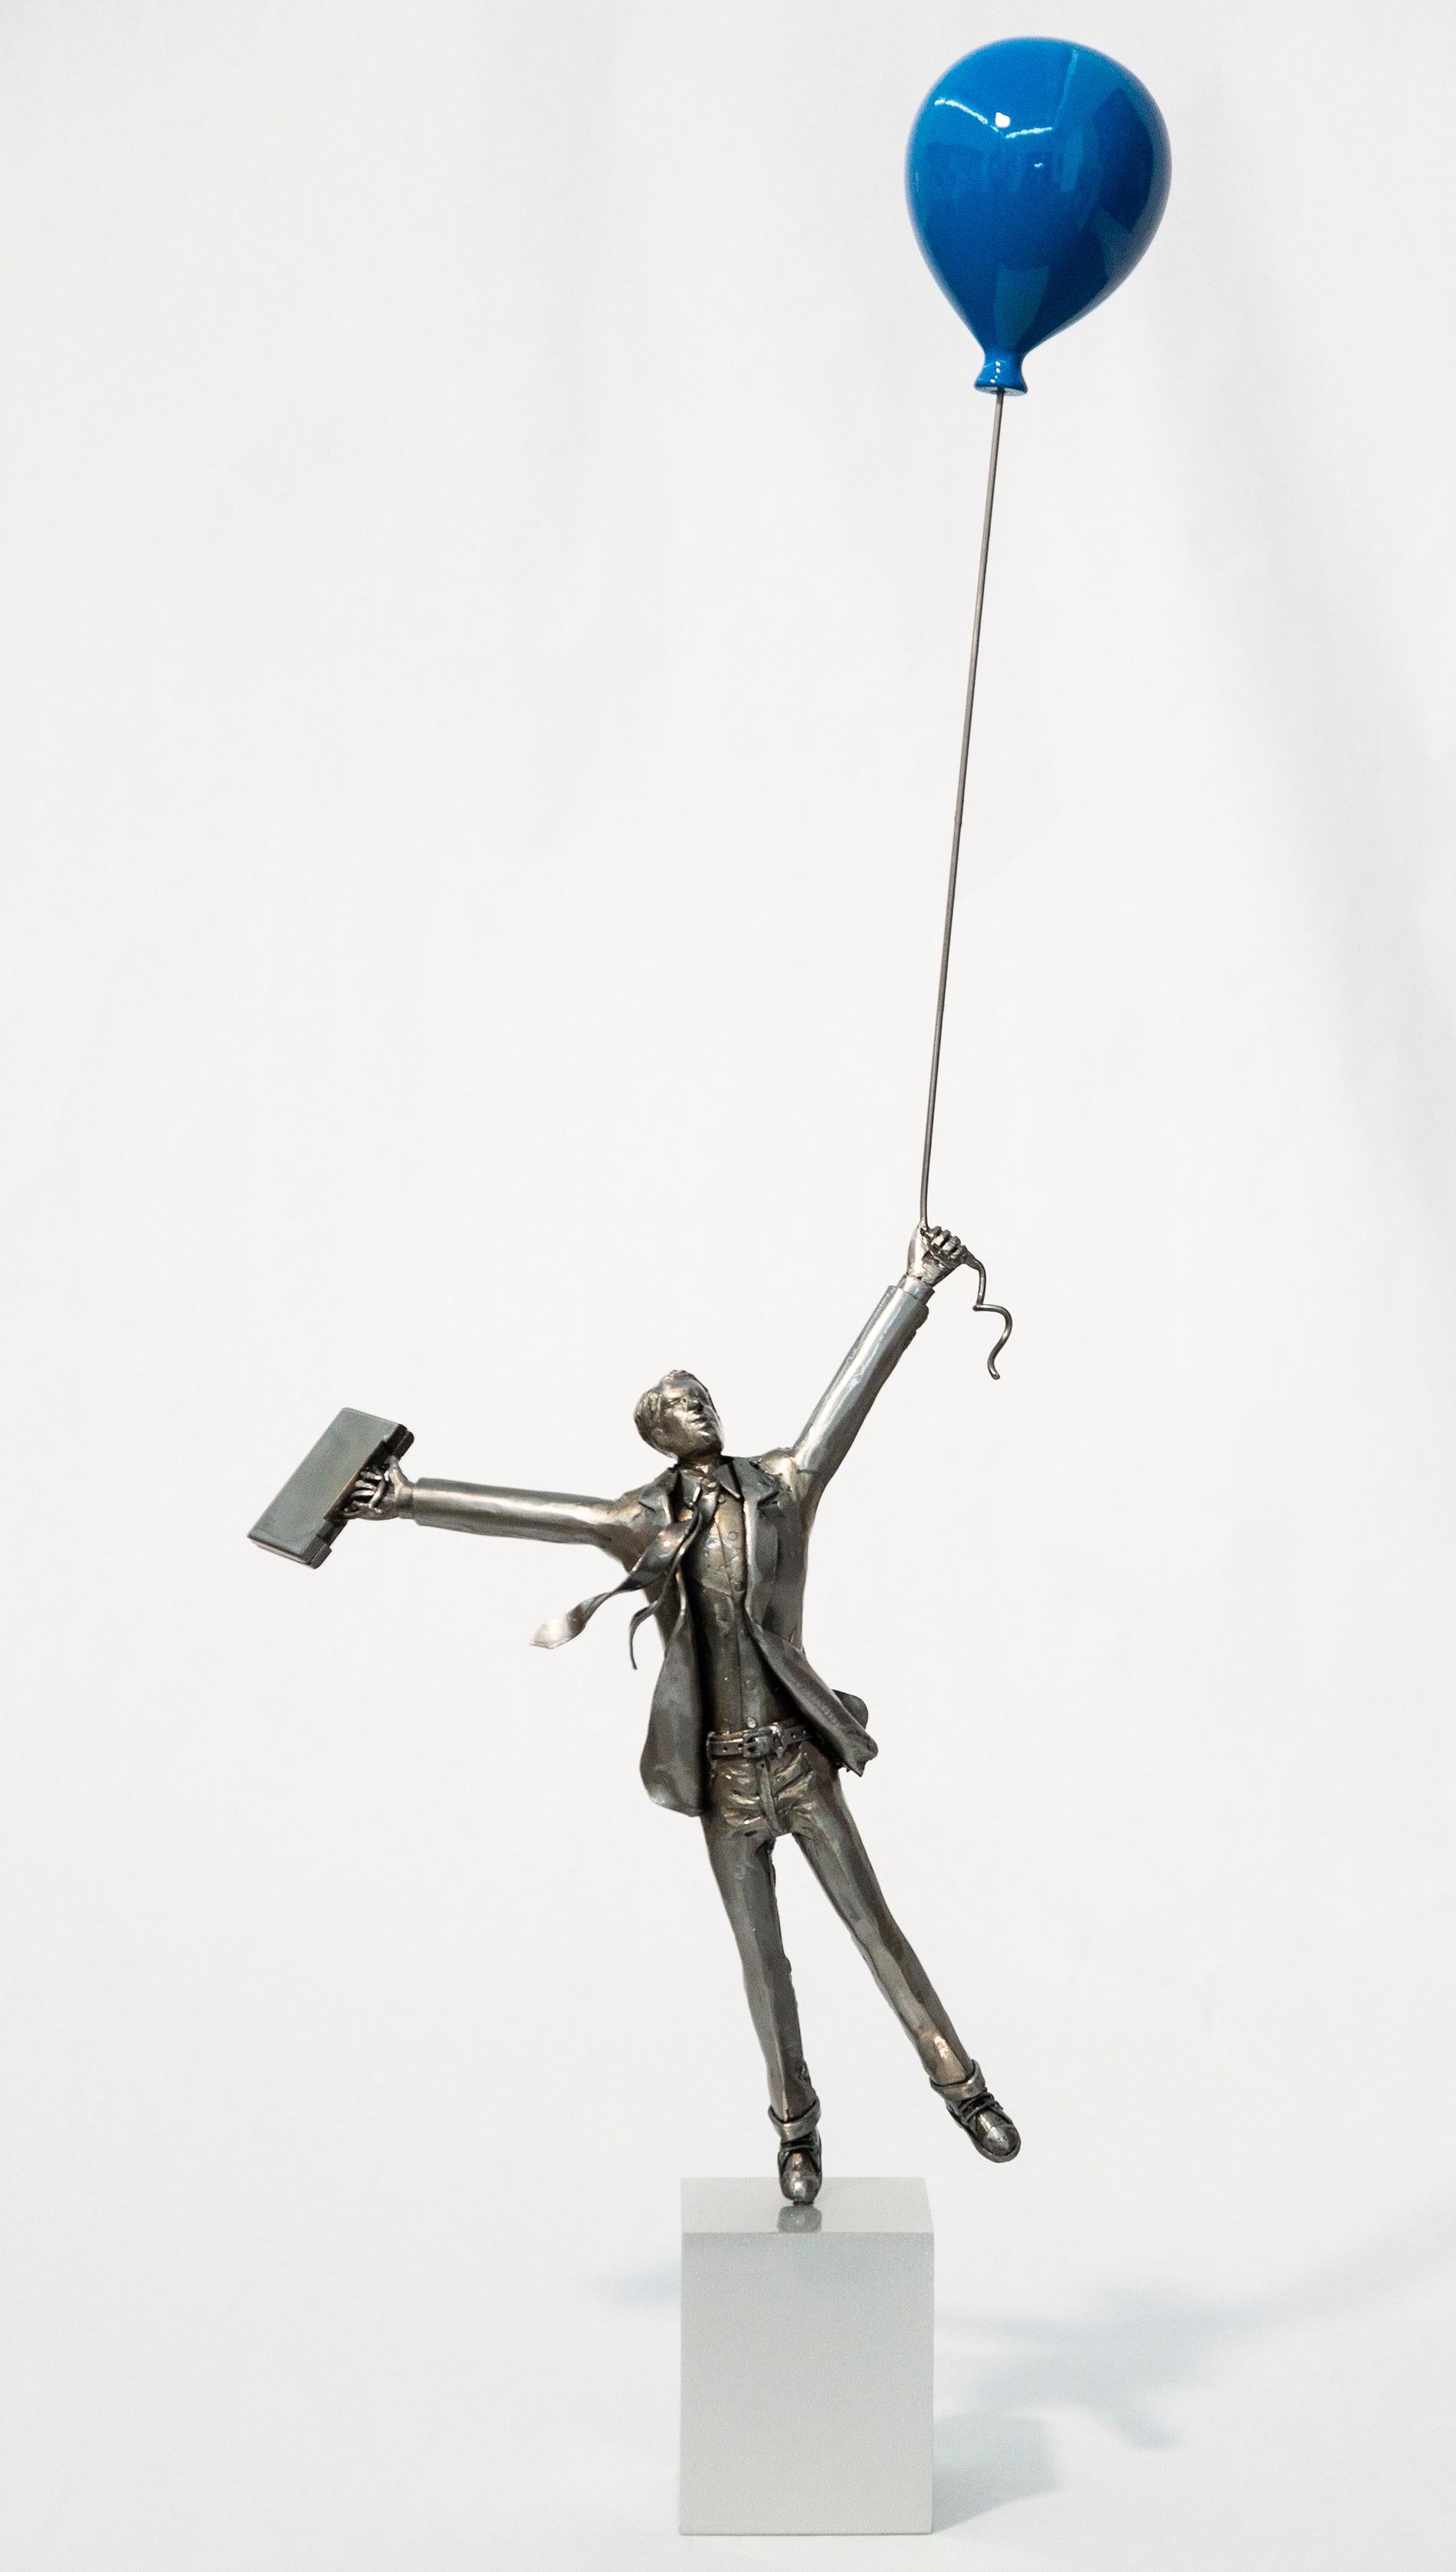 Derya Ozparlak Figurative Sculpture - Next Chapter - man, figurative, blue balloon, steel, fibreglass, sculpture